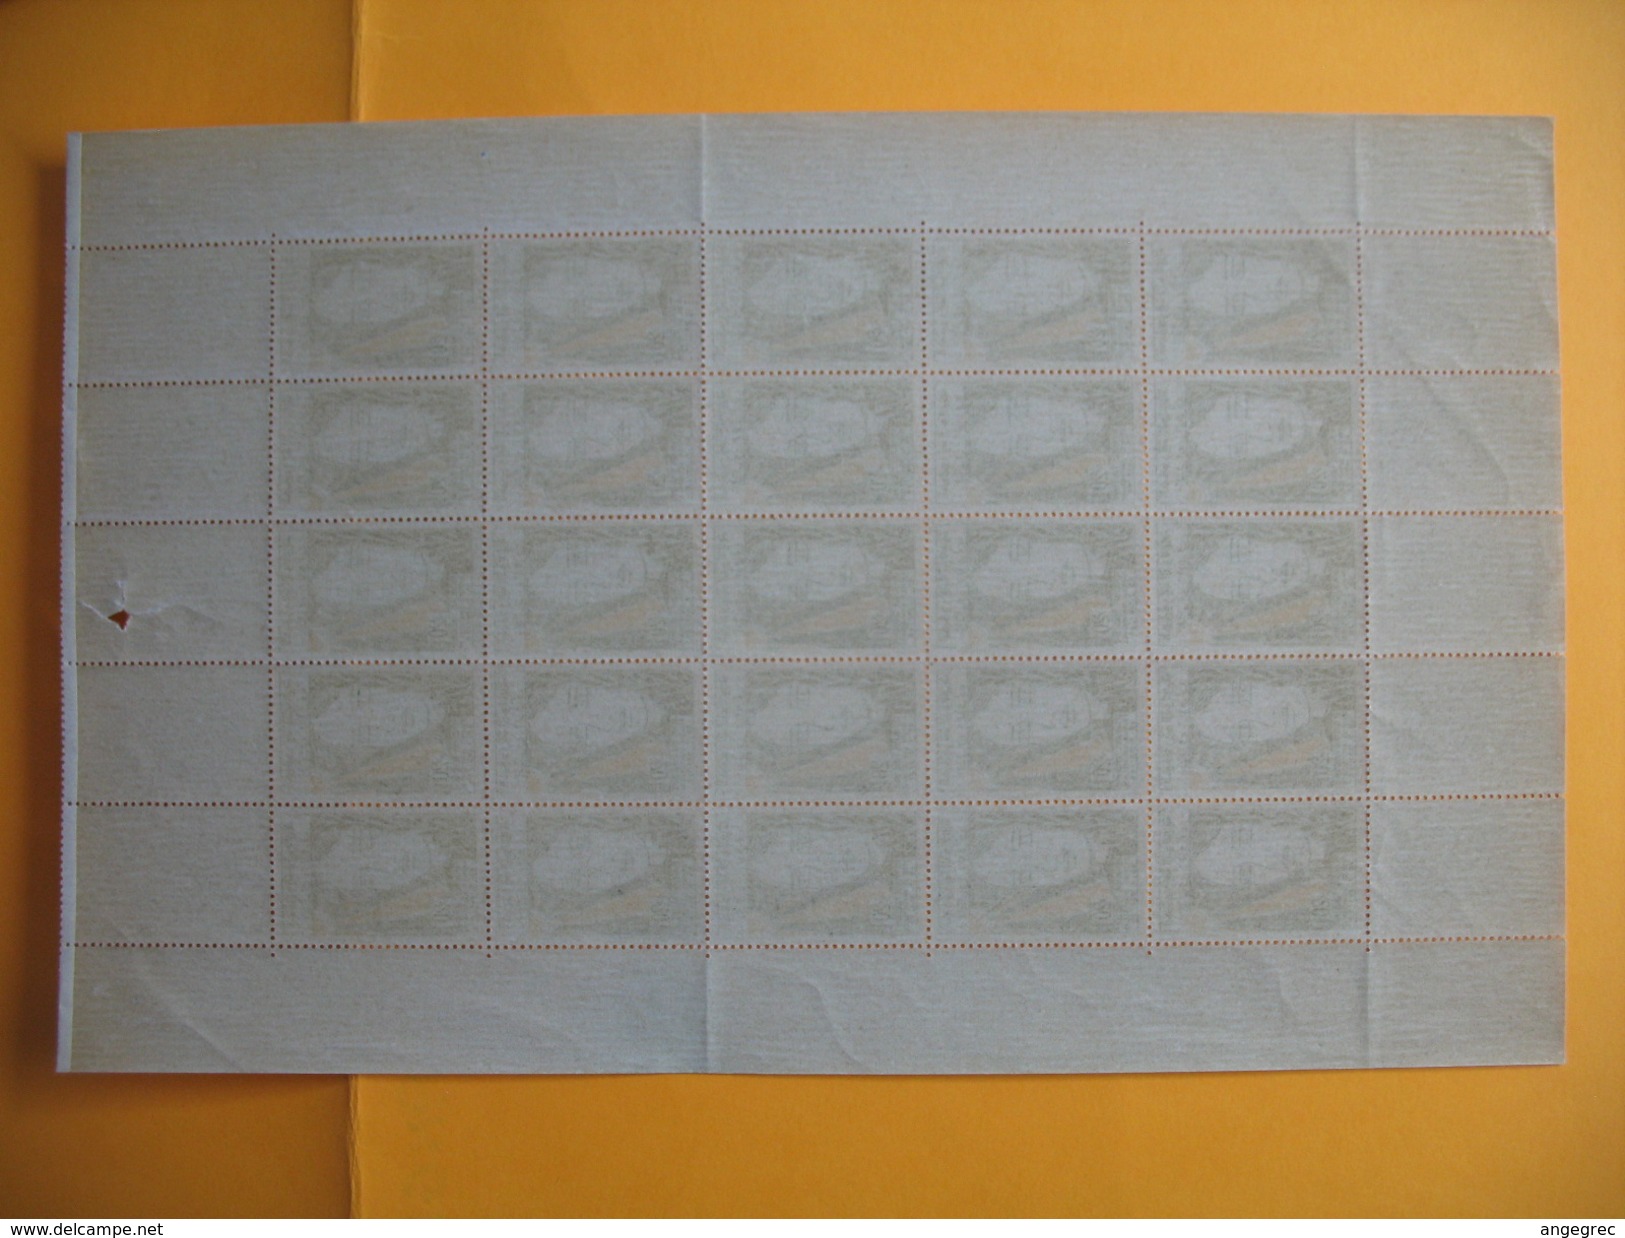 Tunisie 1958   lot de feuille complète de 25  timbre  du N° 458 - 460 - 461 neuf **